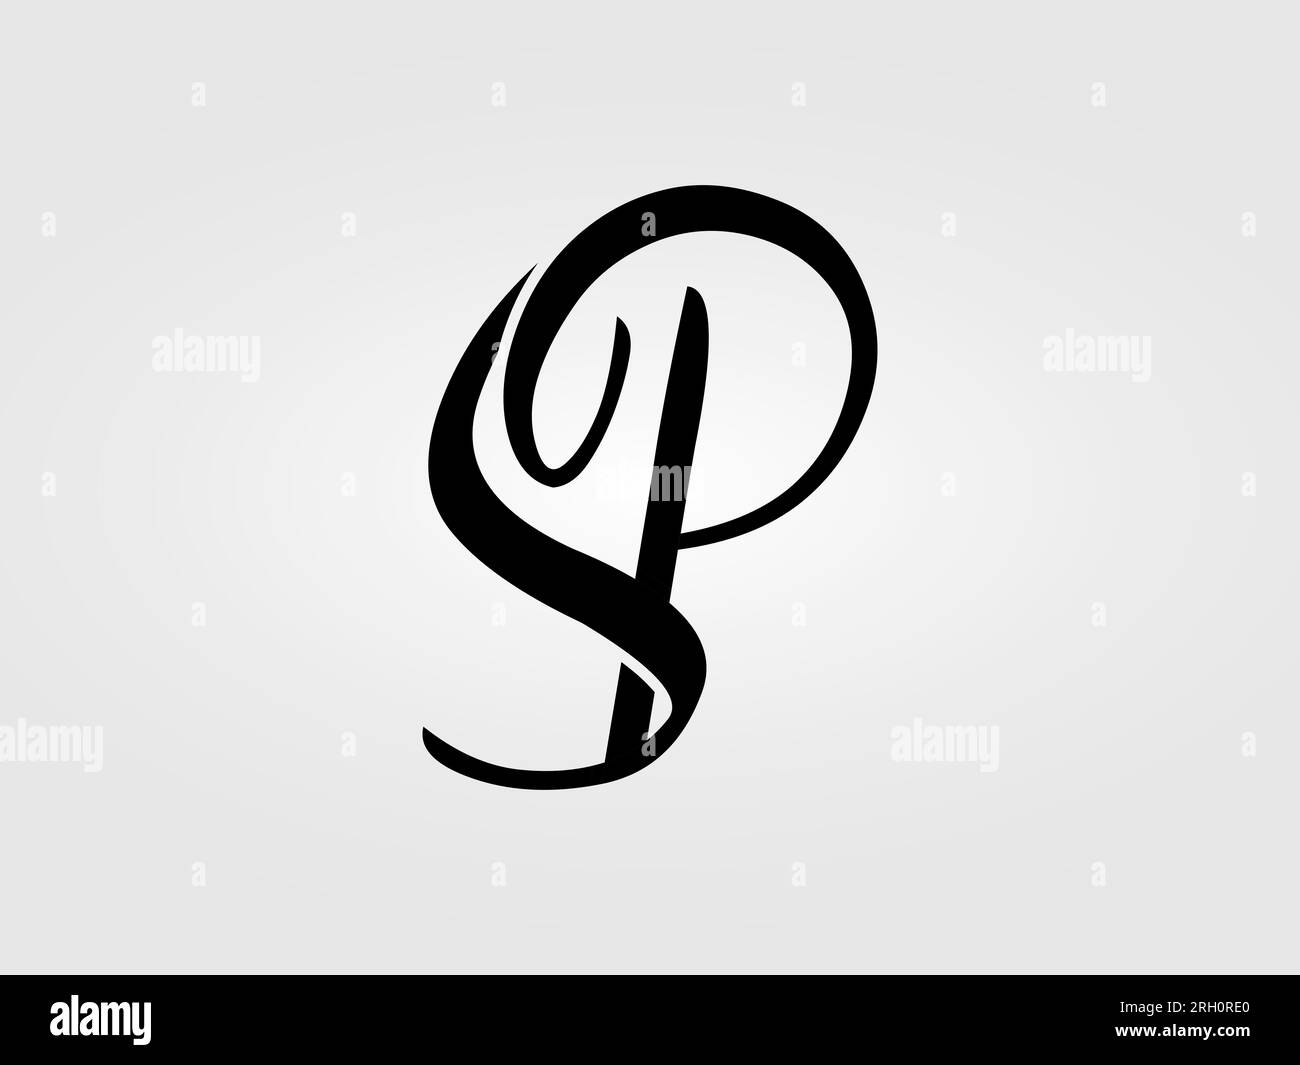 P letter logo lettermark monogram - typeface type Vector Image